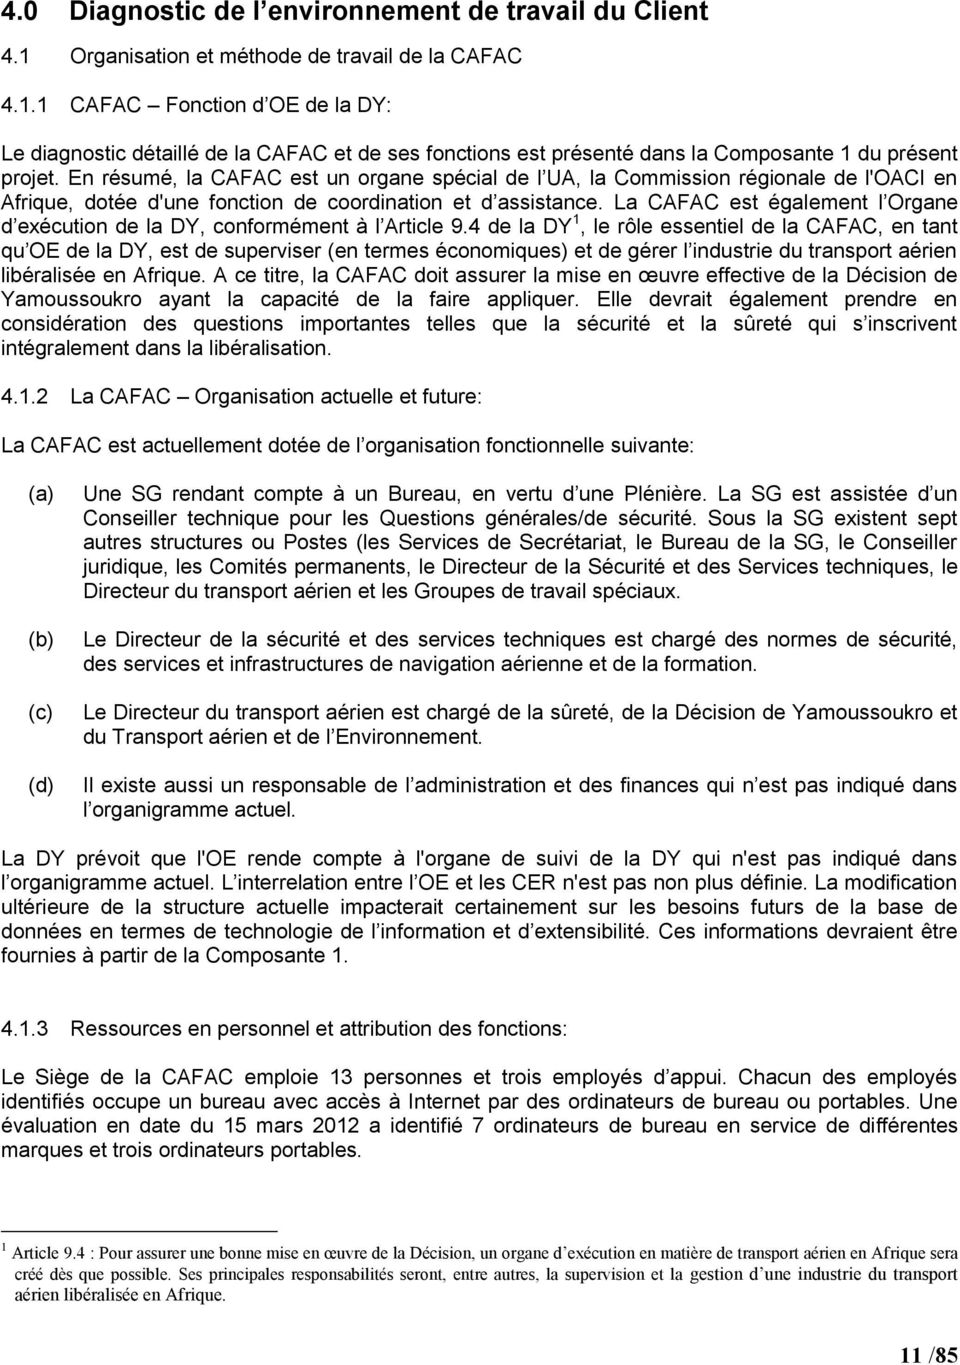 La CAFAC est également l Organe d exécution de la DY, conformément à l Article 9.